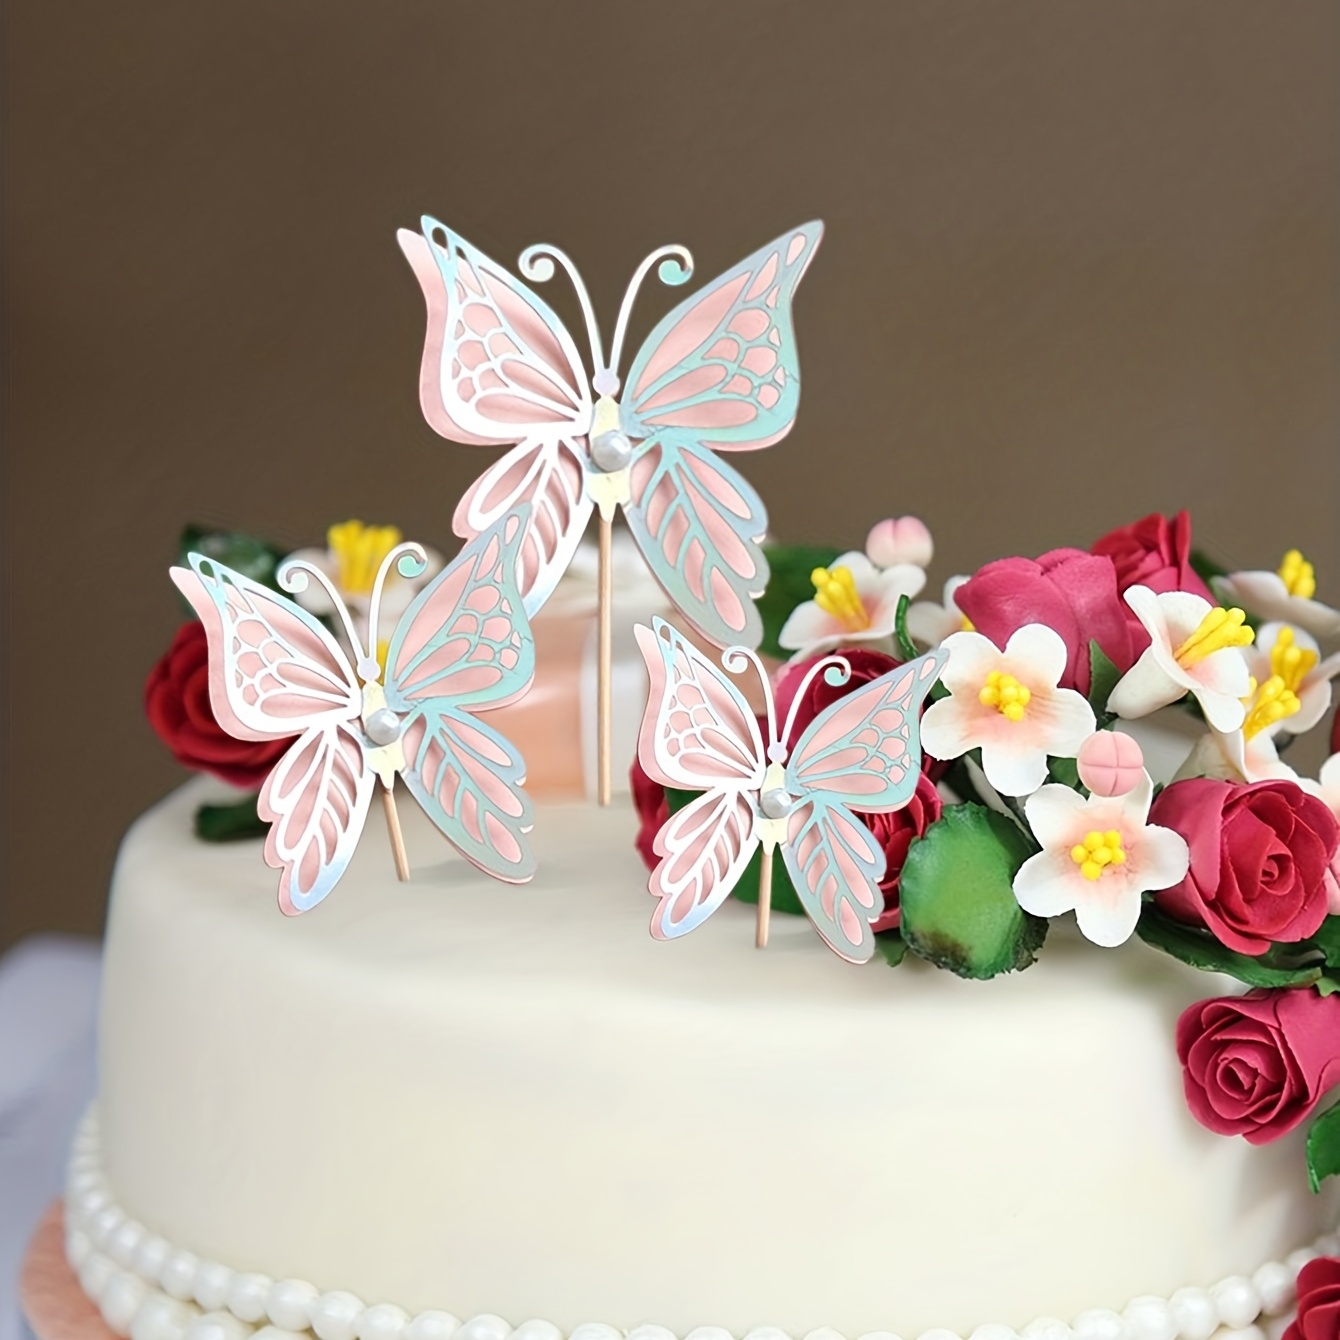 DIY Fairy Cake Design – My Sweet Garden